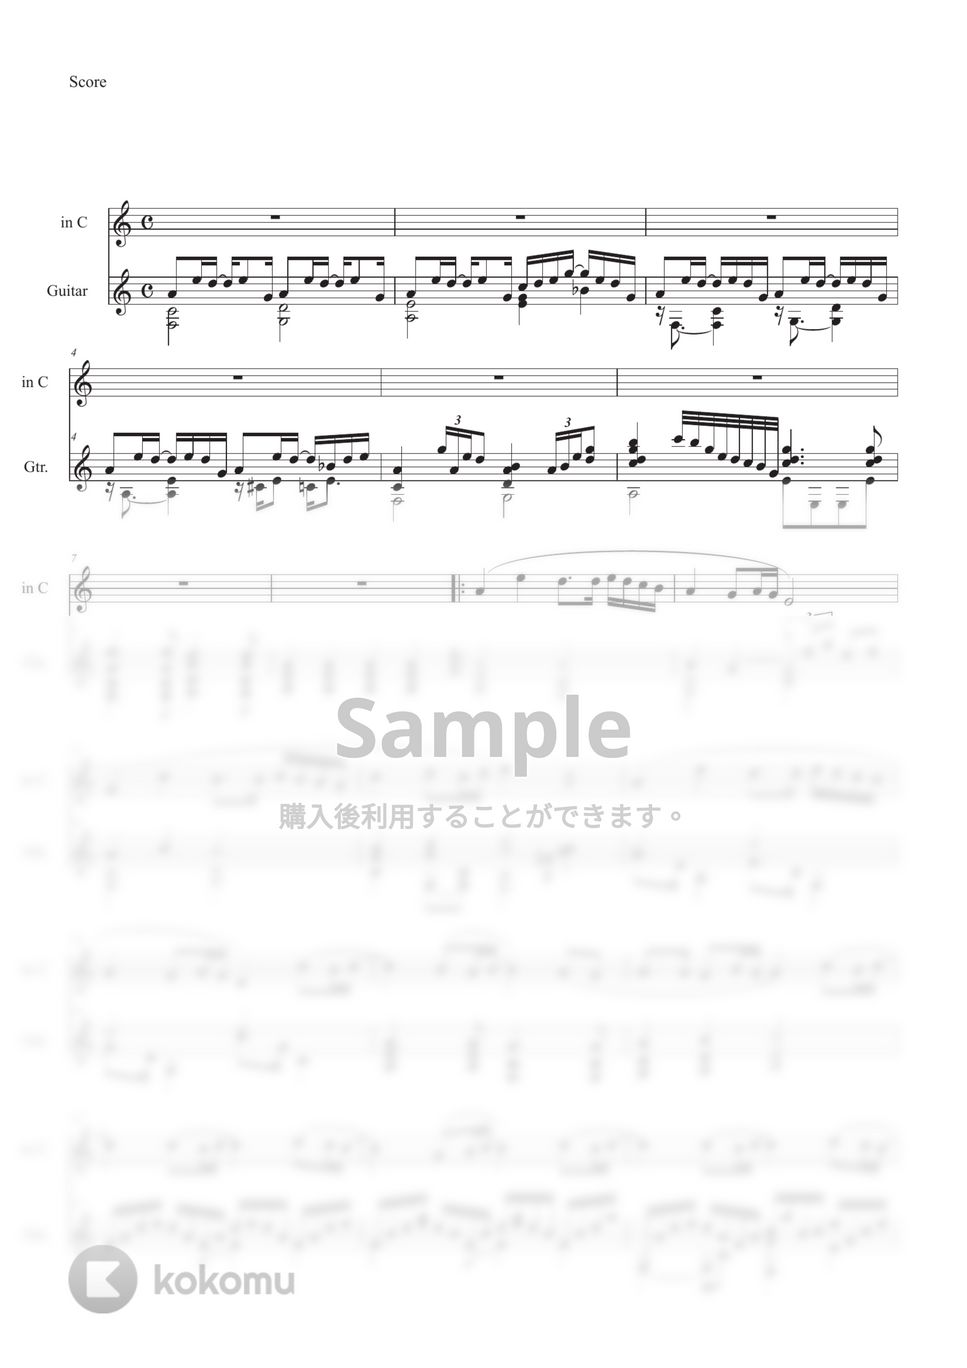 松任谷 由実 - 春よ、来い (ギター+メロディ(in C,in B♭,in E♭)) by Ponze Records